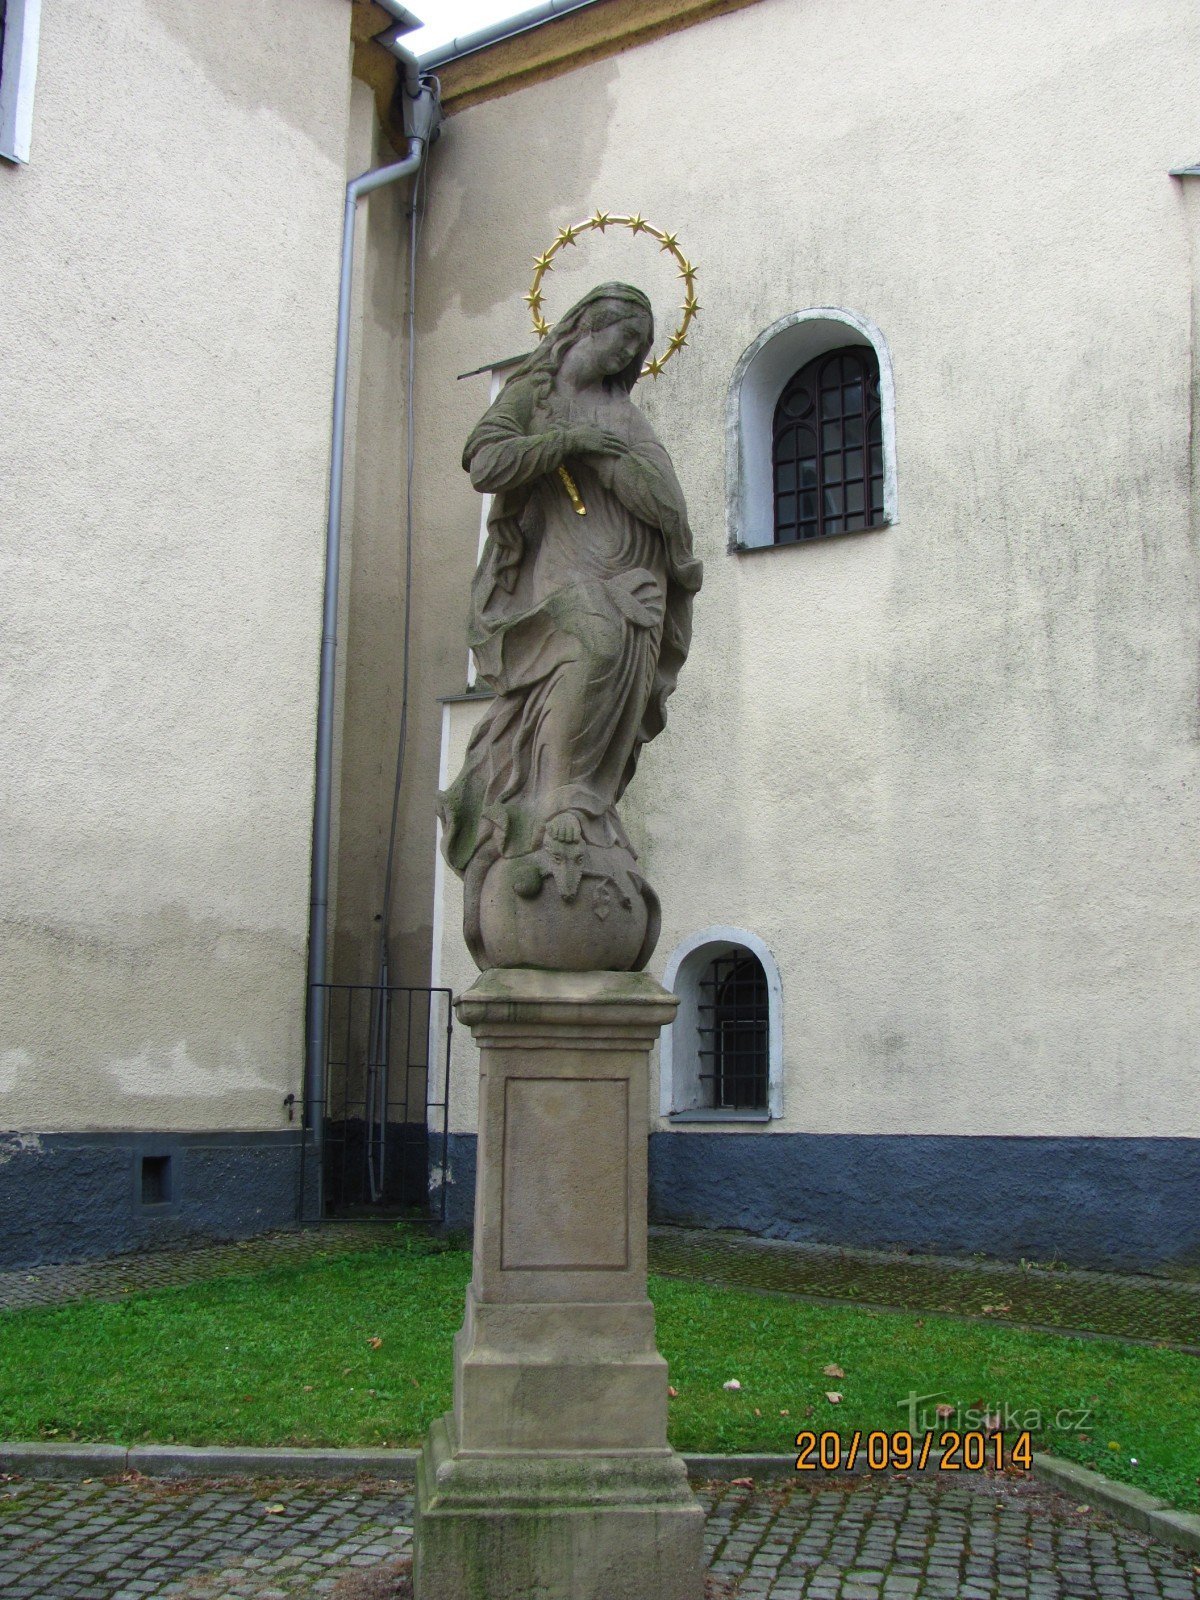 Статуя Девы Марии в церкви св. Катерины в Климковицах